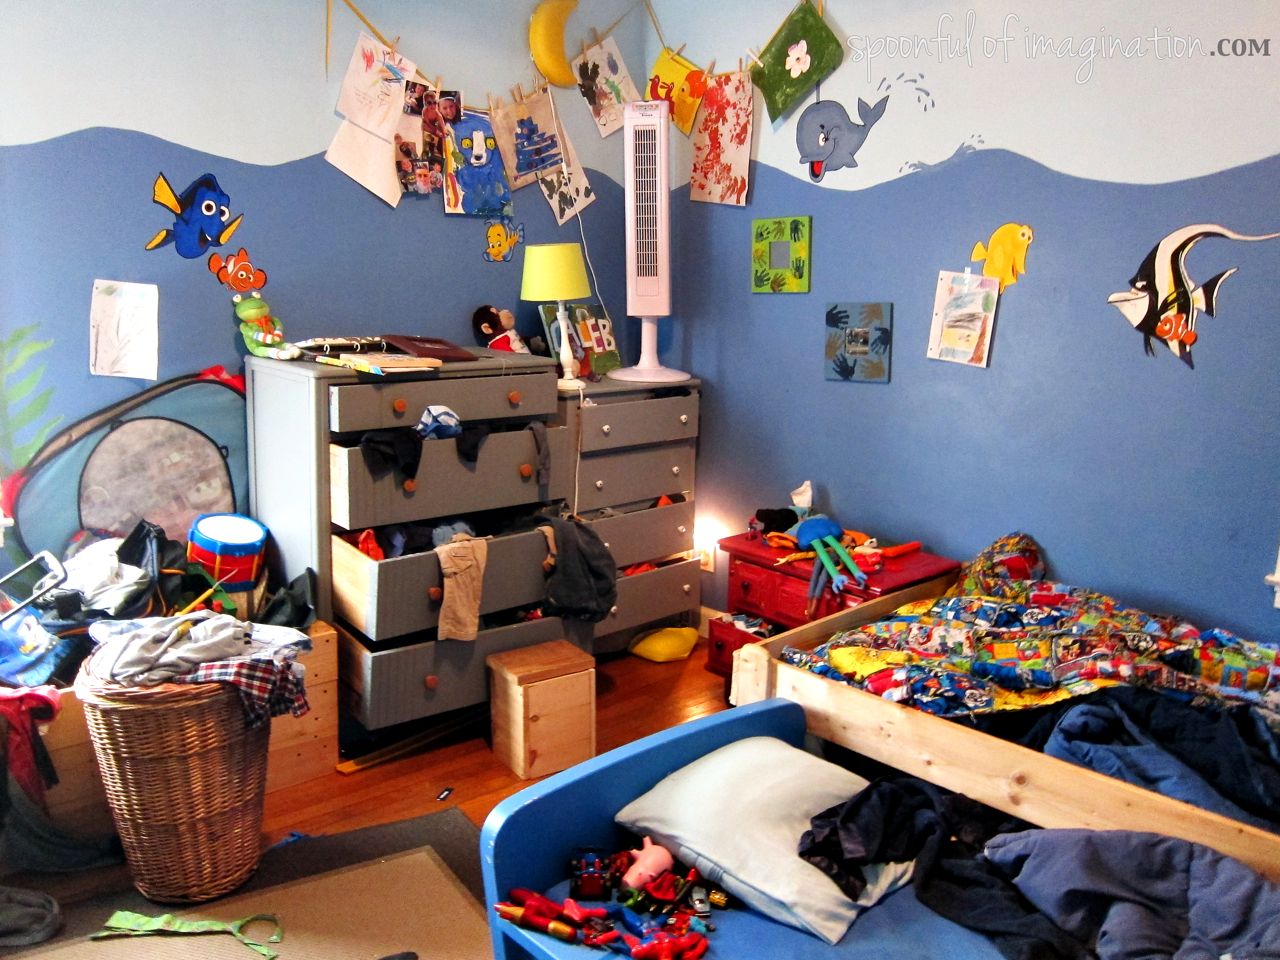 Где можно найти комнаты. Беспорядок в комнате. Беспорядок в детской комнате. Комната с разбросанными вещами. Бардак в комнате.